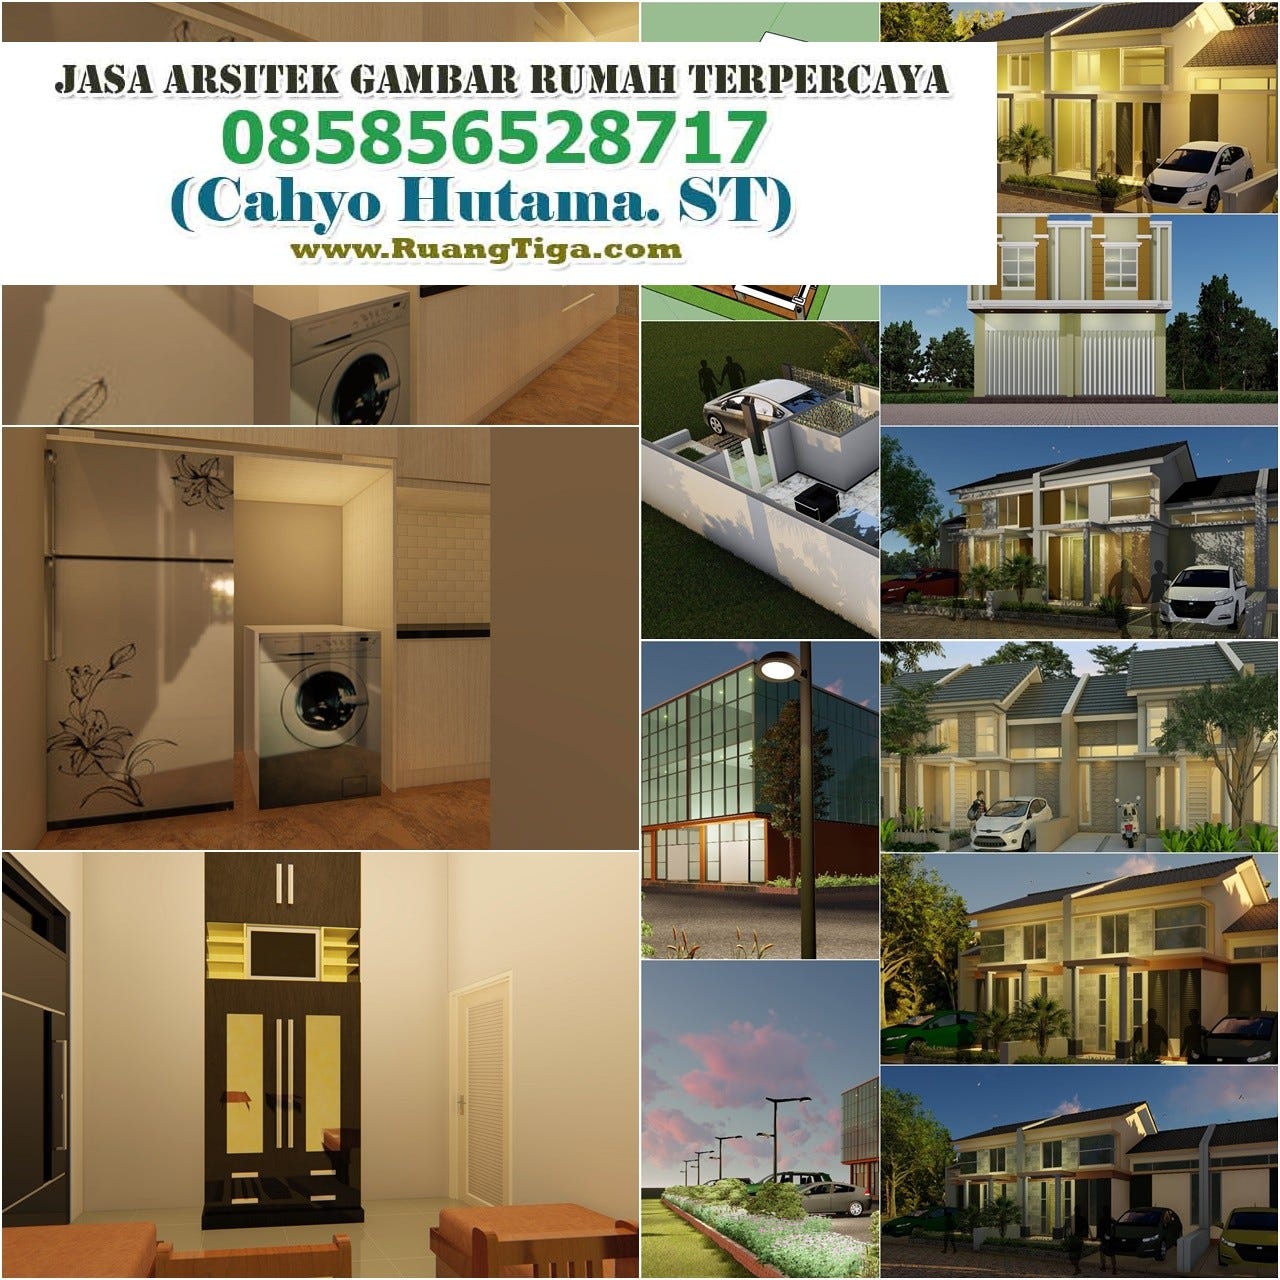 085856528717 Jasa Arsitek Desain Rumah Modern Klasik Mewah